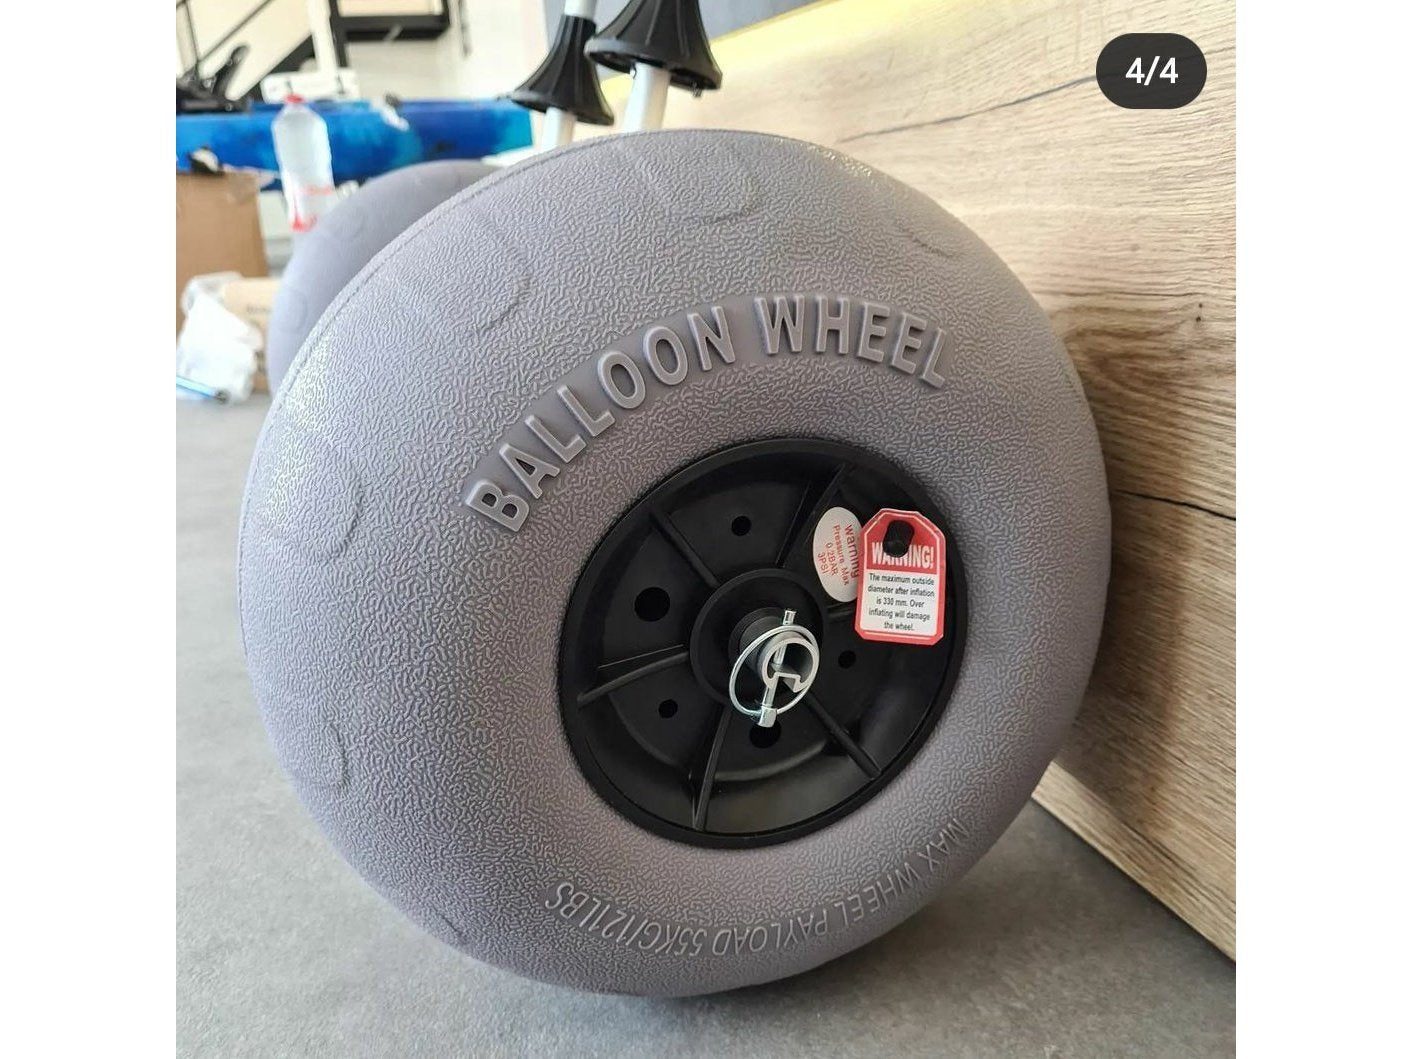 Ballon wheels